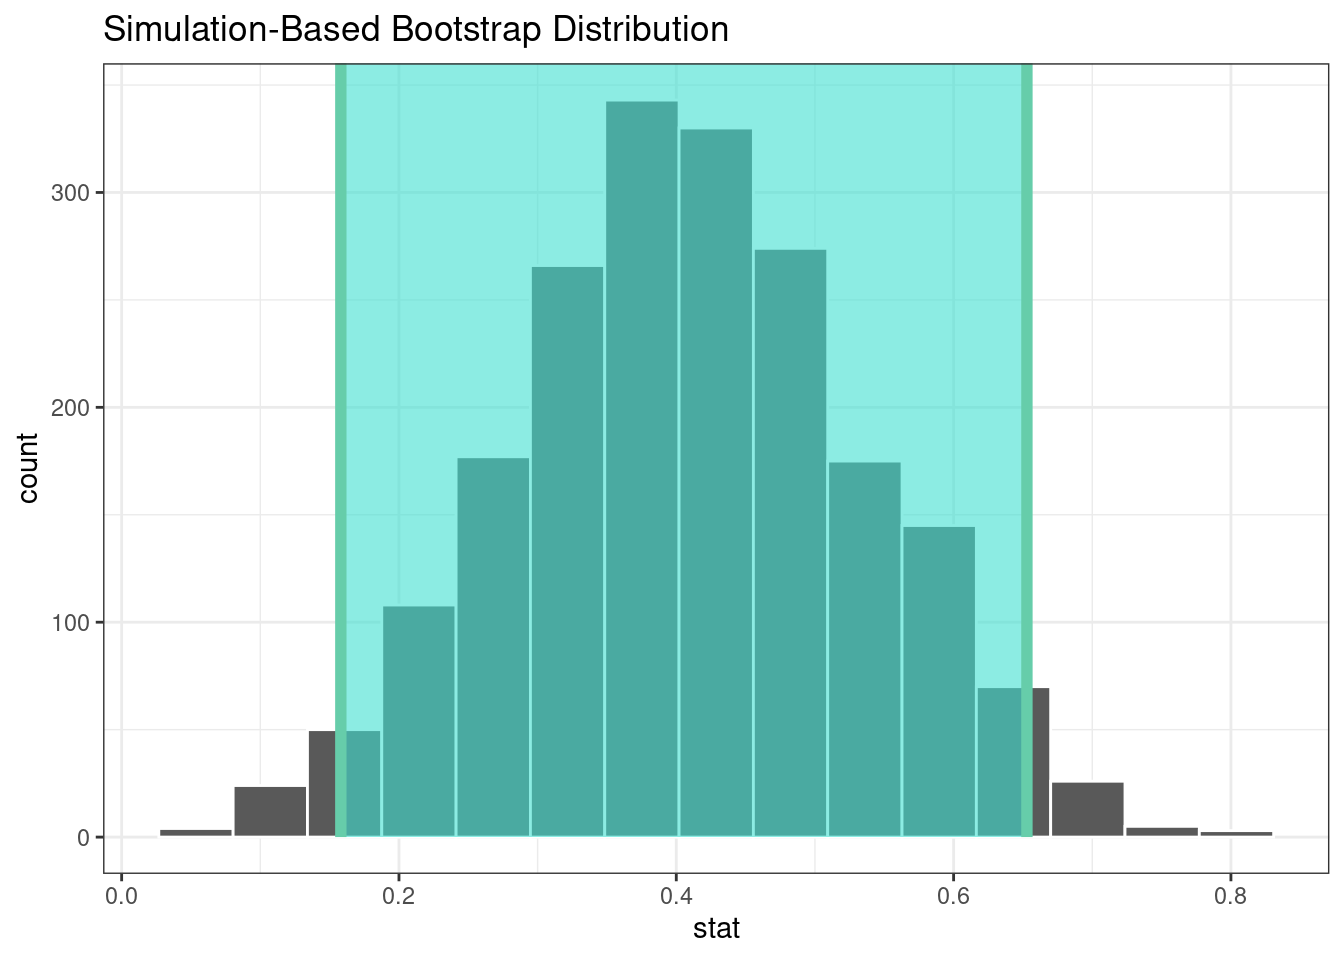 La distribución bootstrap de la diferencia de medias. La región resaltada es el intervalo de confianza, que no incluye un valor de cero.